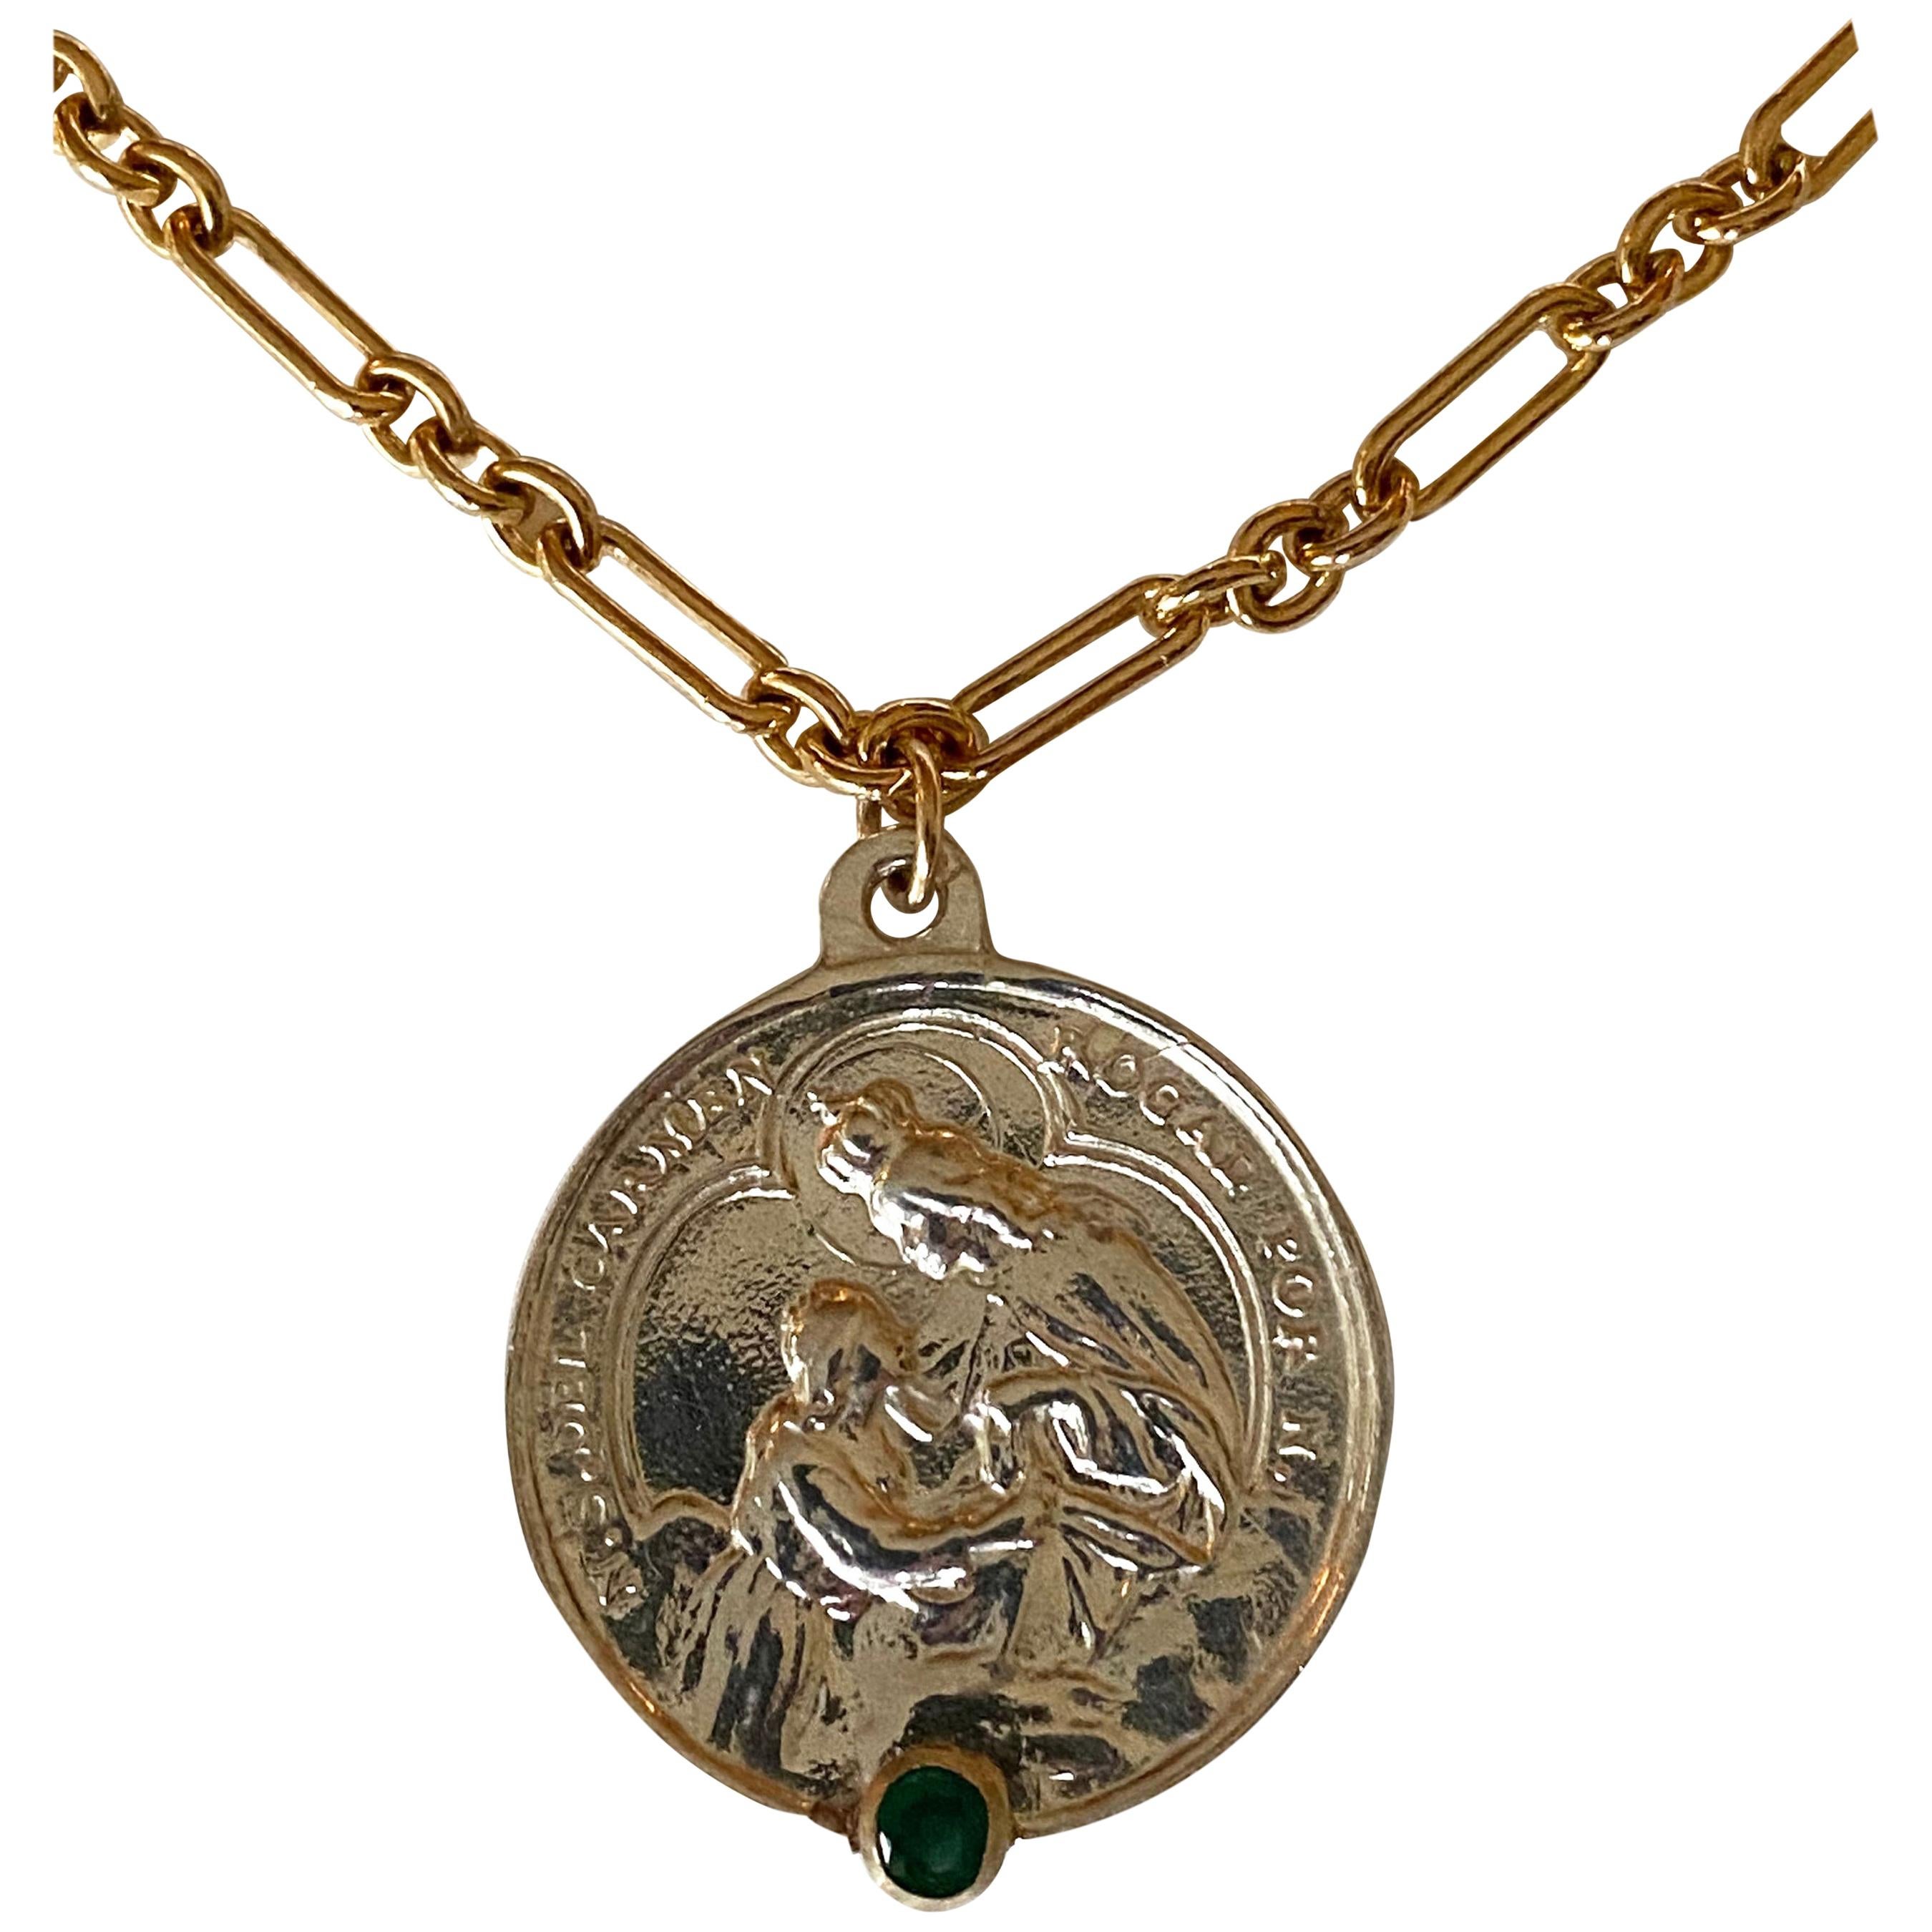 Smaragd Sterling Silber Heilige Medaille Halskette Kette Spirituelle Religiöse
Goldgefüllte Kette

Exklusives Stück mit einer runden Medaille der Jungfrau Maria in Silber mit einem Smaragd in einer Goldzacke und mit einer goldfarbenen Kette.